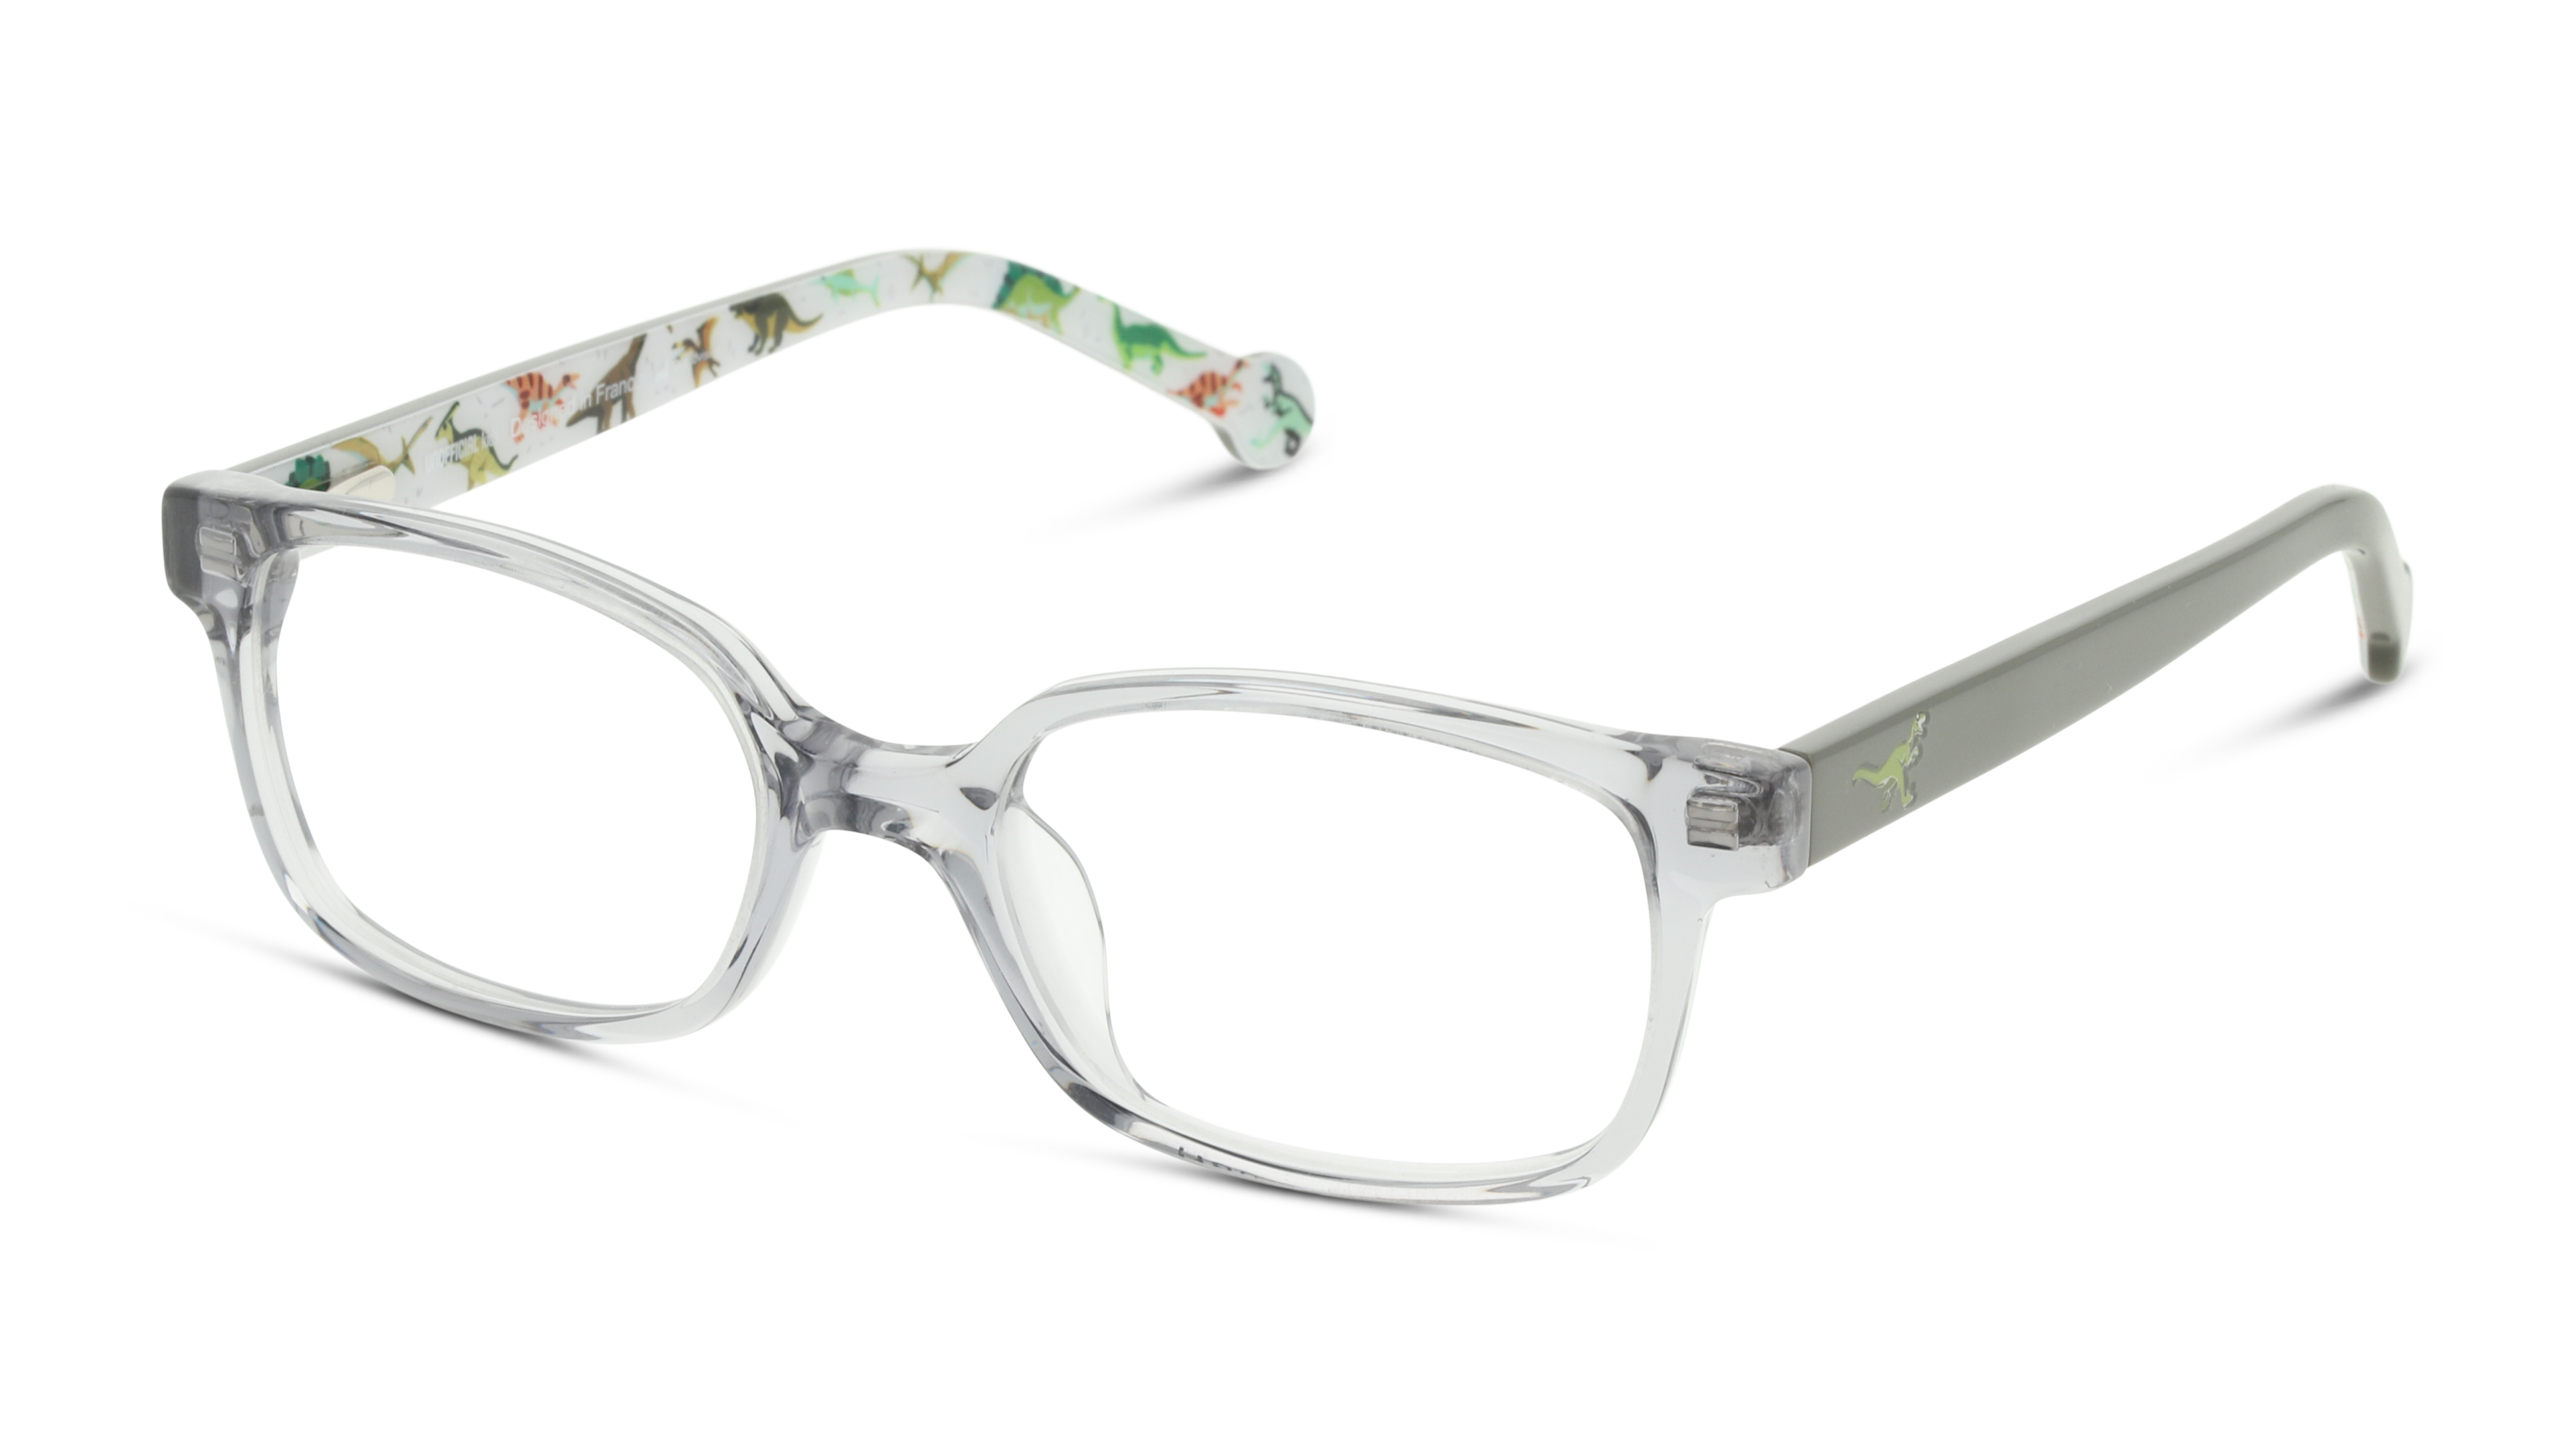 Angle_Left01 Unofficial UN OK0066 Children's Glasses Transparent / Grey